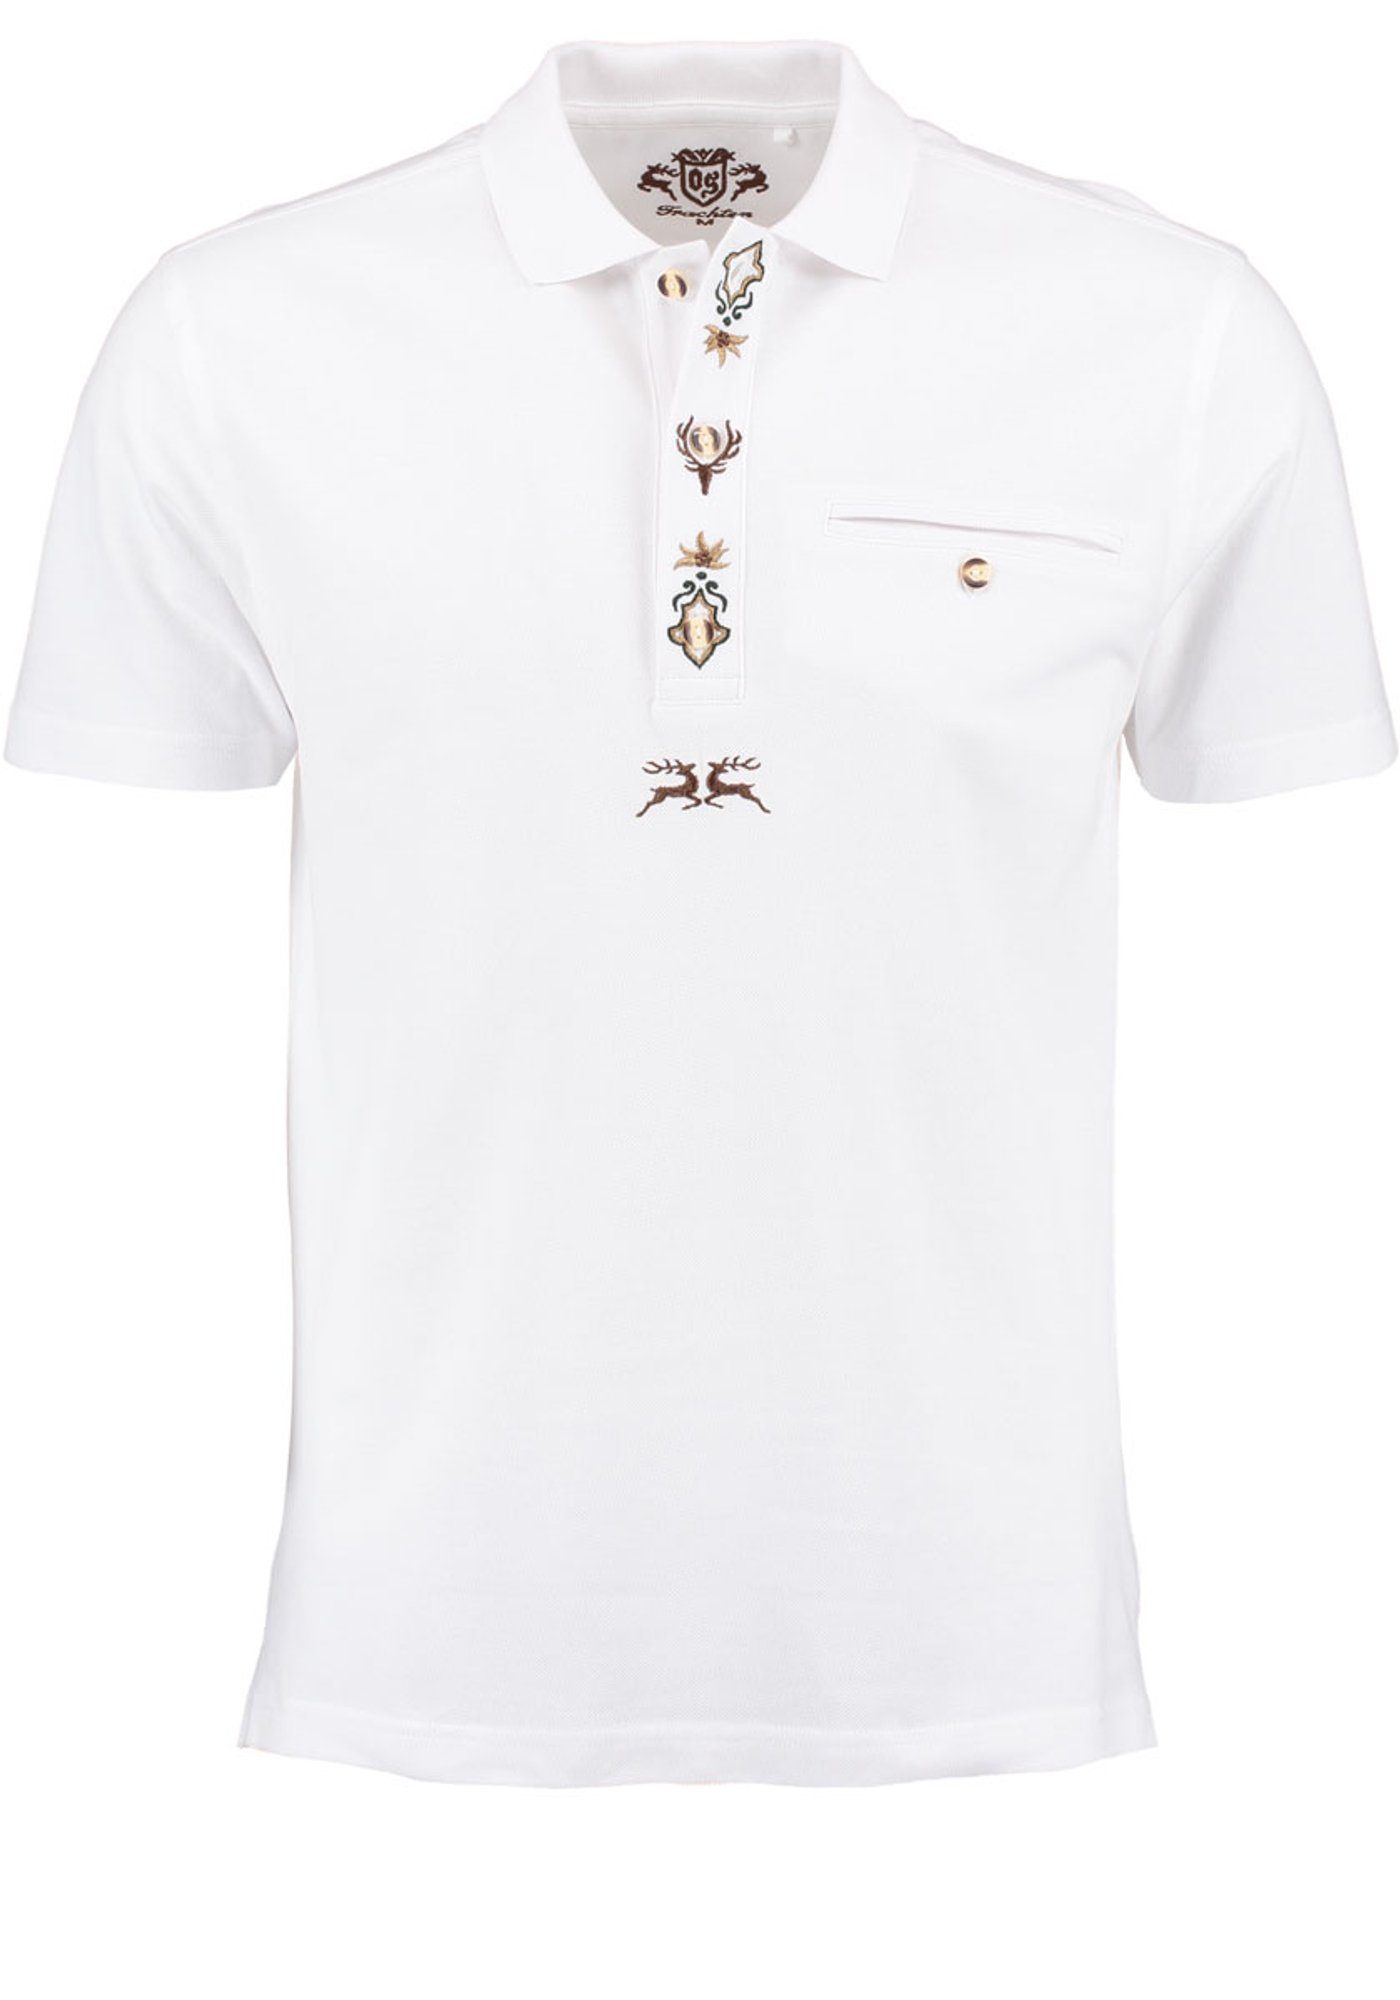 Poloshirt auf der weiß OS-Trachten Esoqo Jagdshirt mit Stickereien Kurzarm Knopfleiste